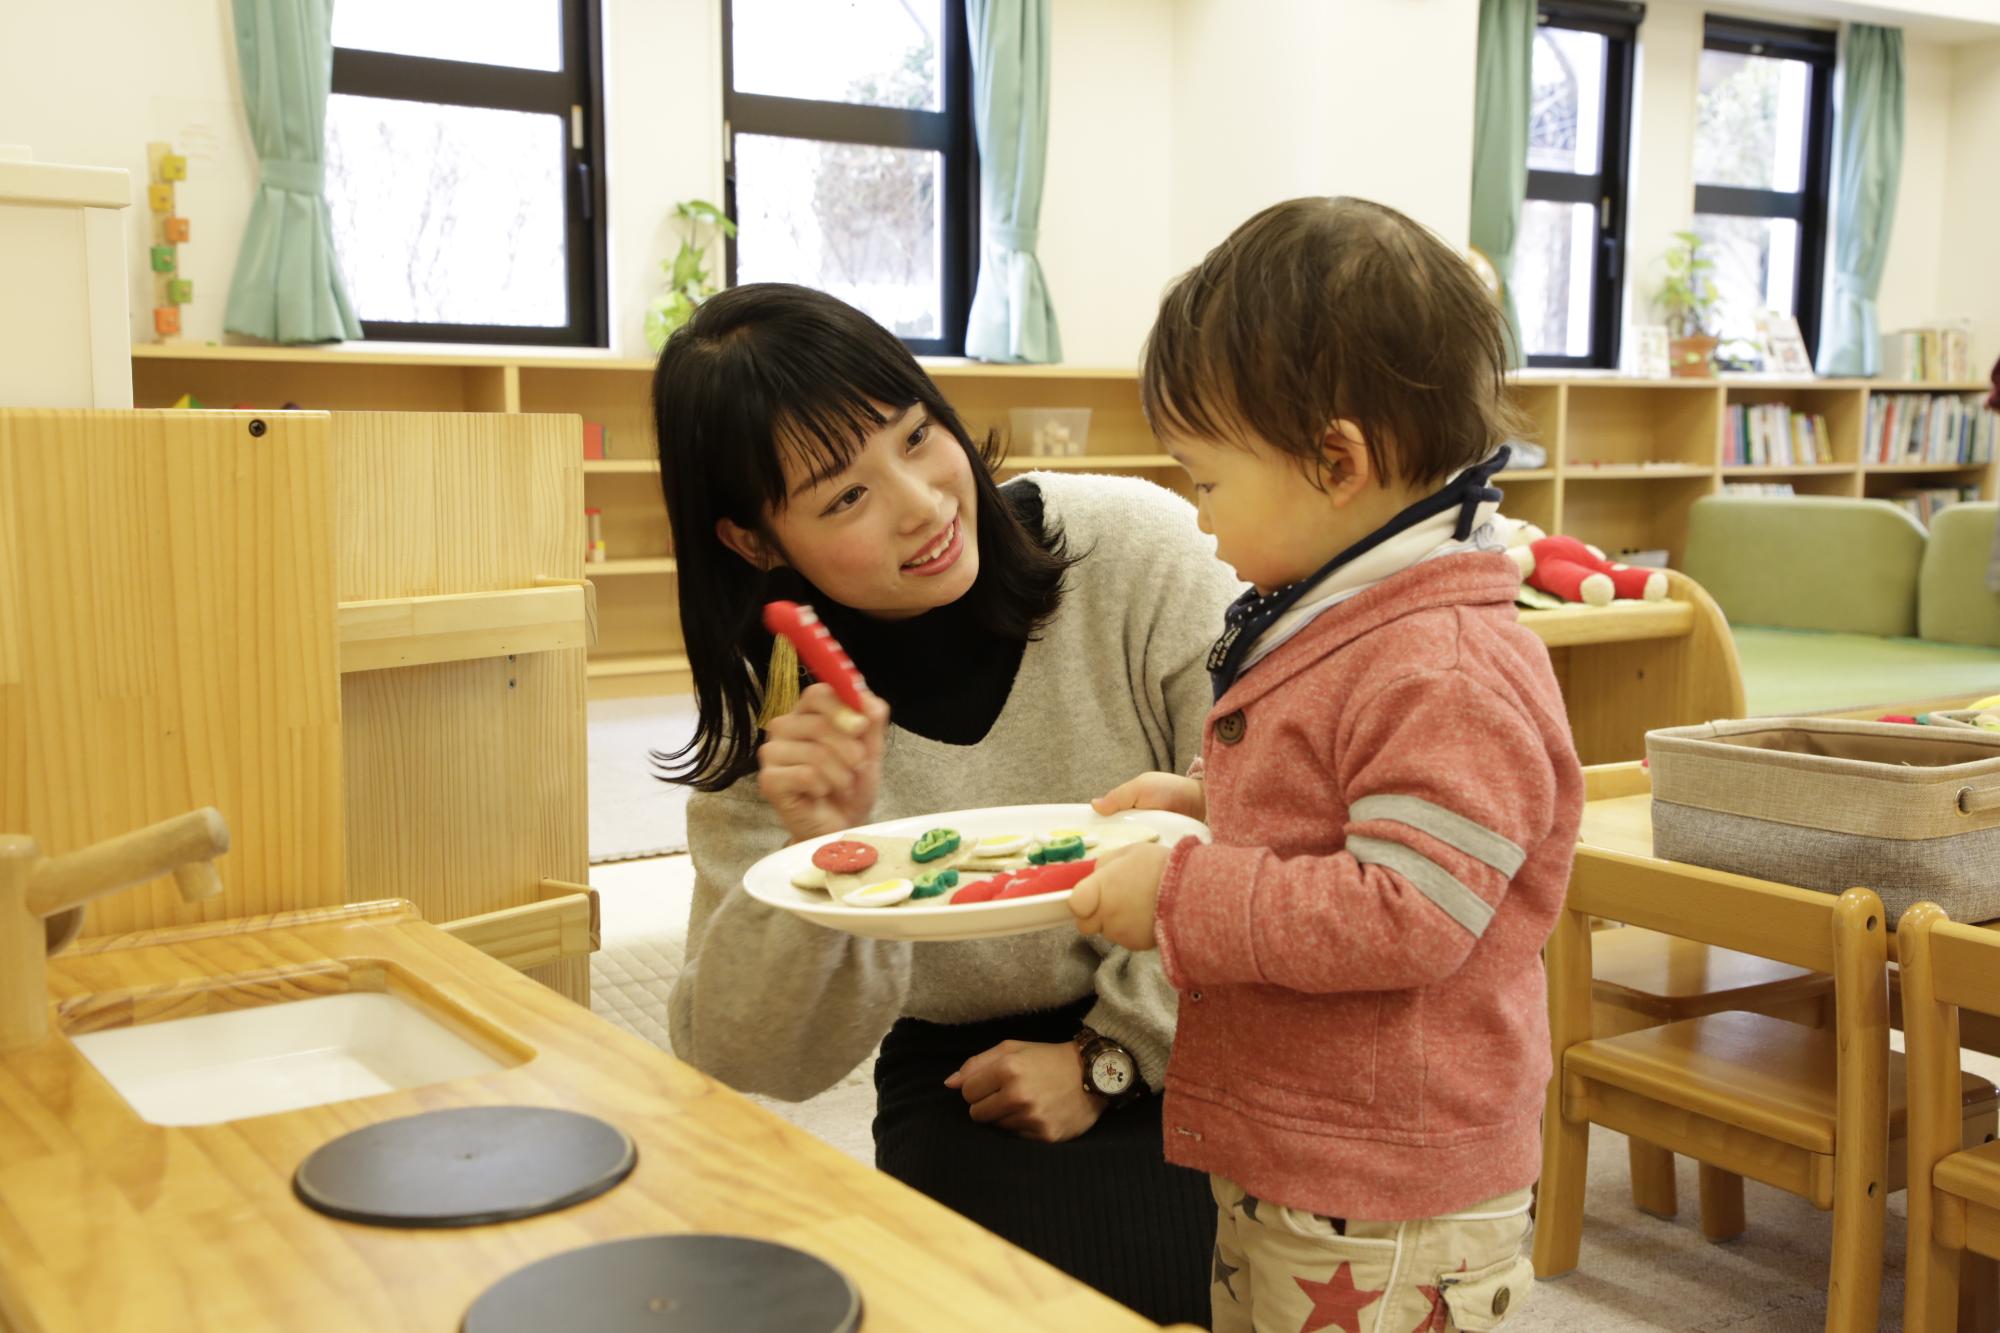 子供センターの取り組み「さぽさぽ」で子供と一緒に遊んでいる大学生ボランティアの姿が写っている写真。キッチンを模した木製のおもちゃが置かれている。